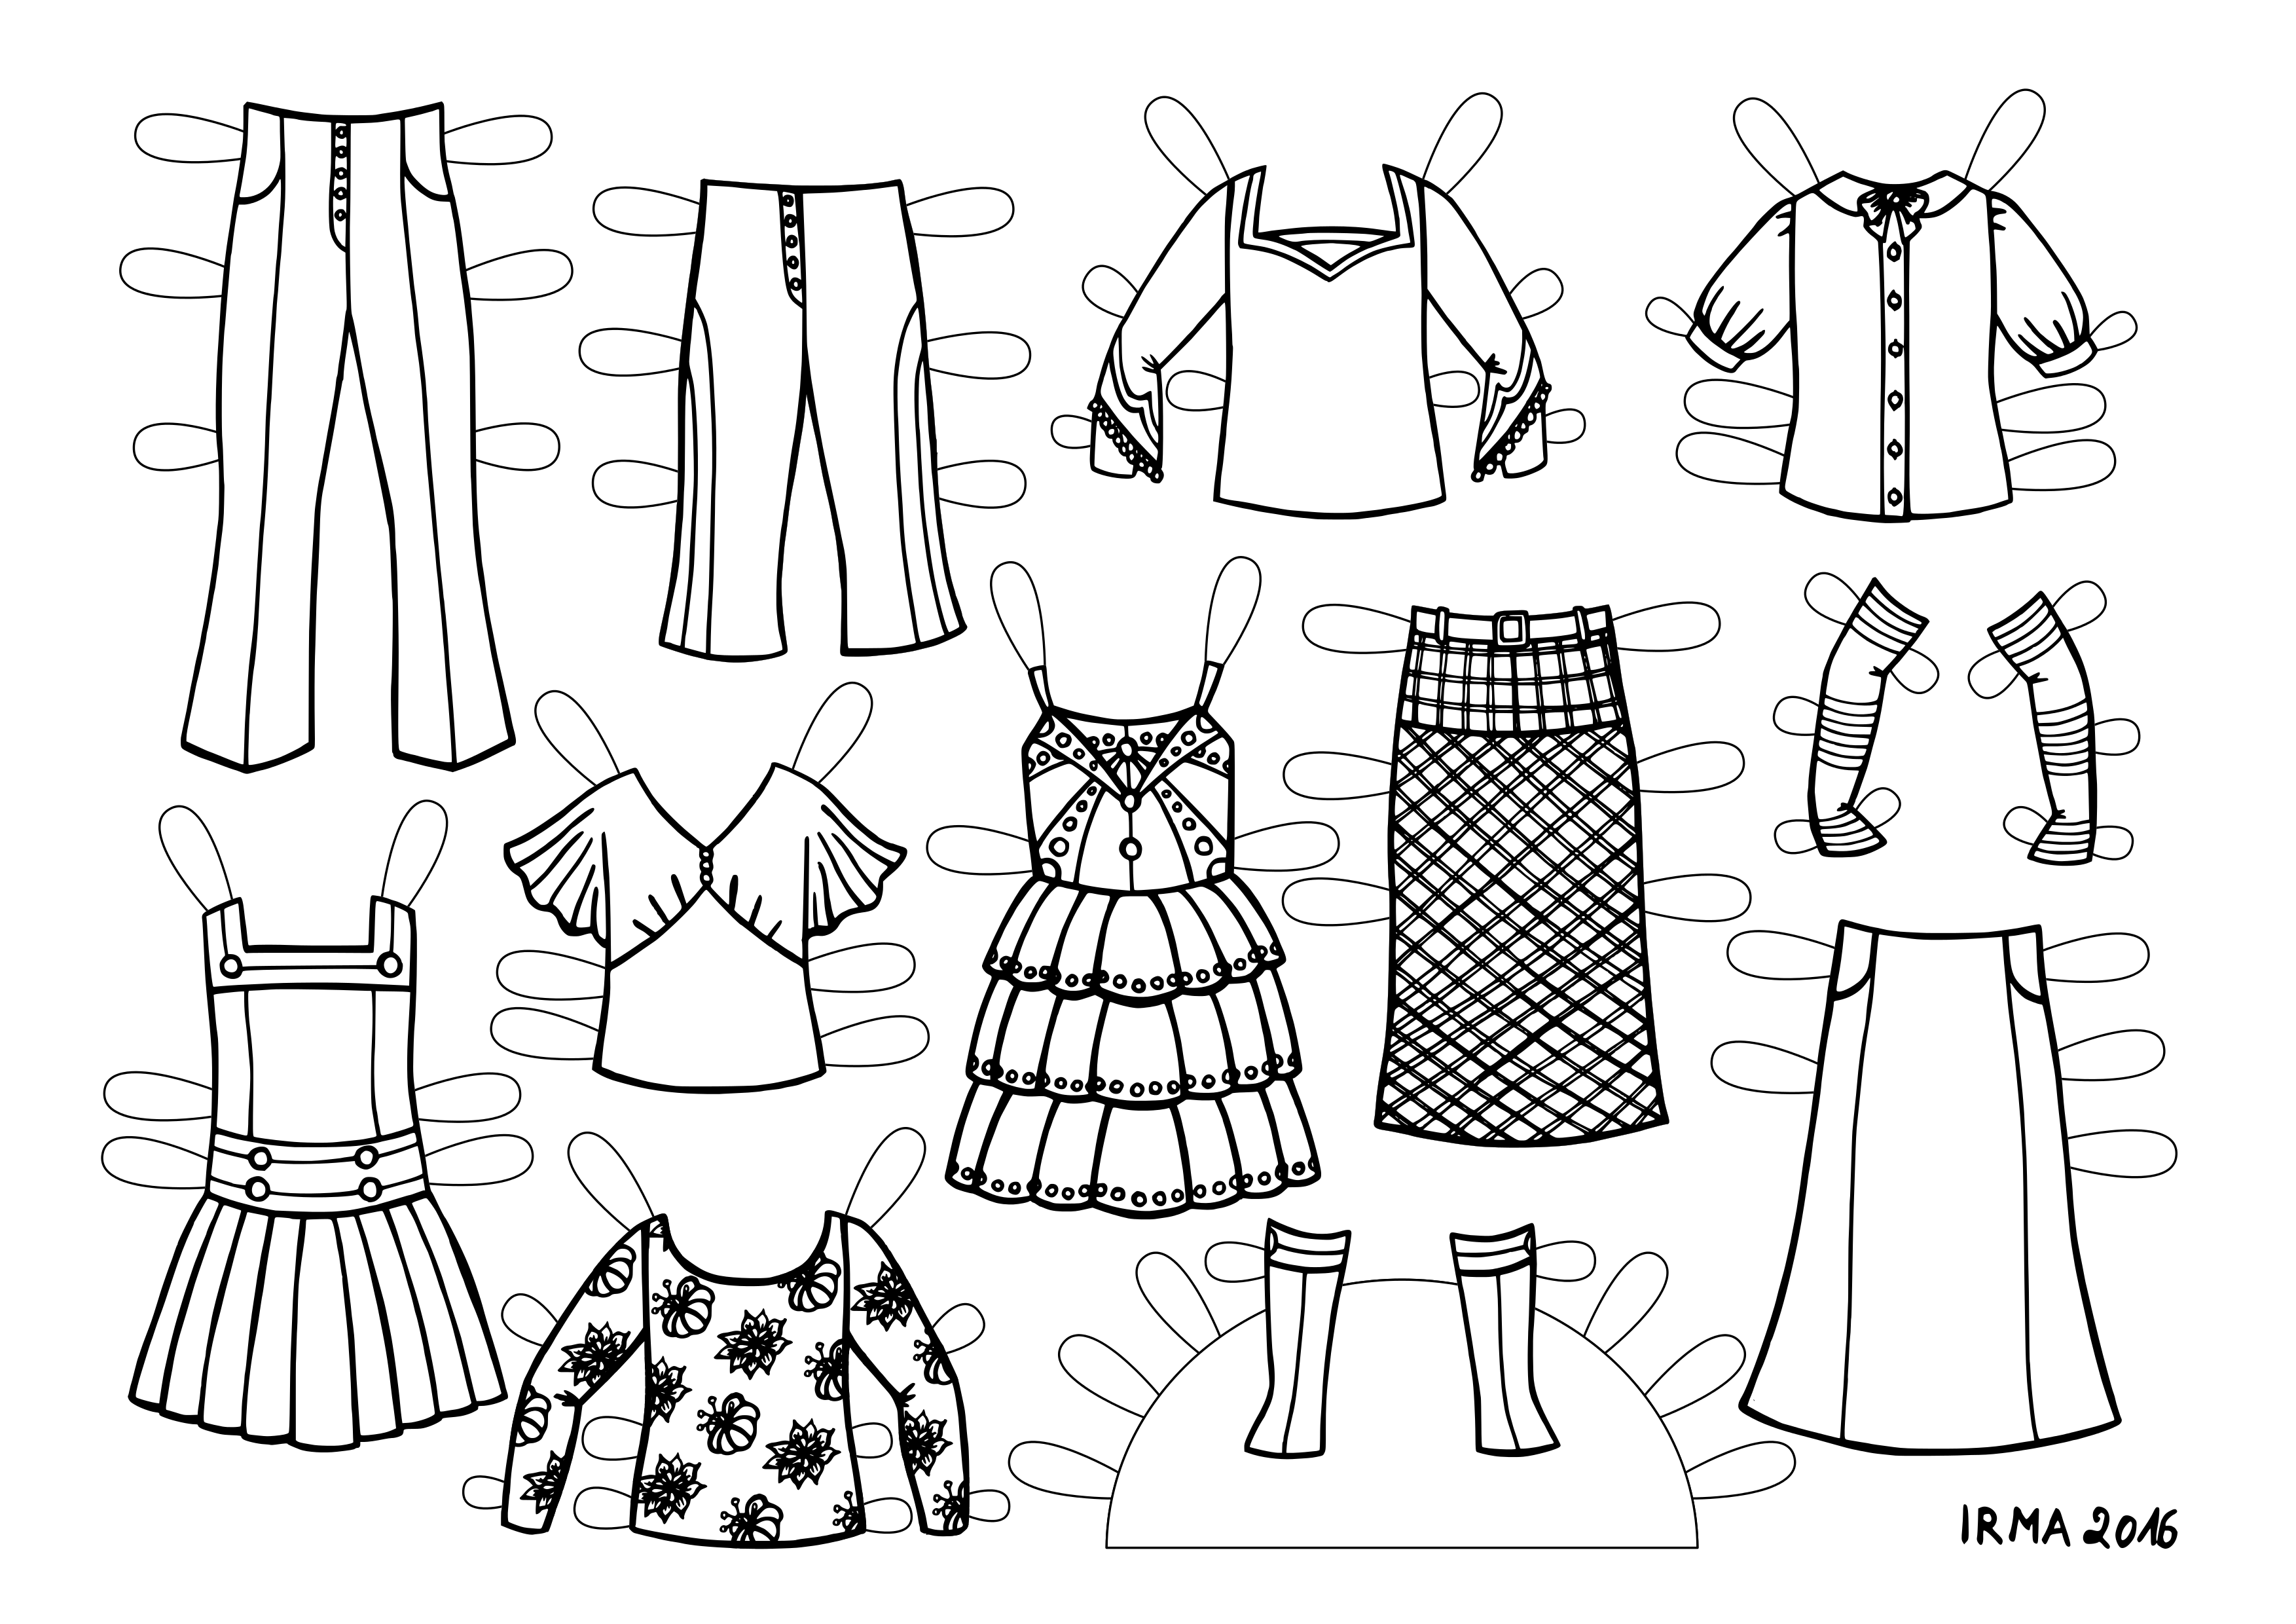 Kaks paari pükse, neli pluusi, saapad, pikad sõrmedeta kindad, kaks kleiti ja kaks seelikut. All on väike kiri: IRMA 2016.